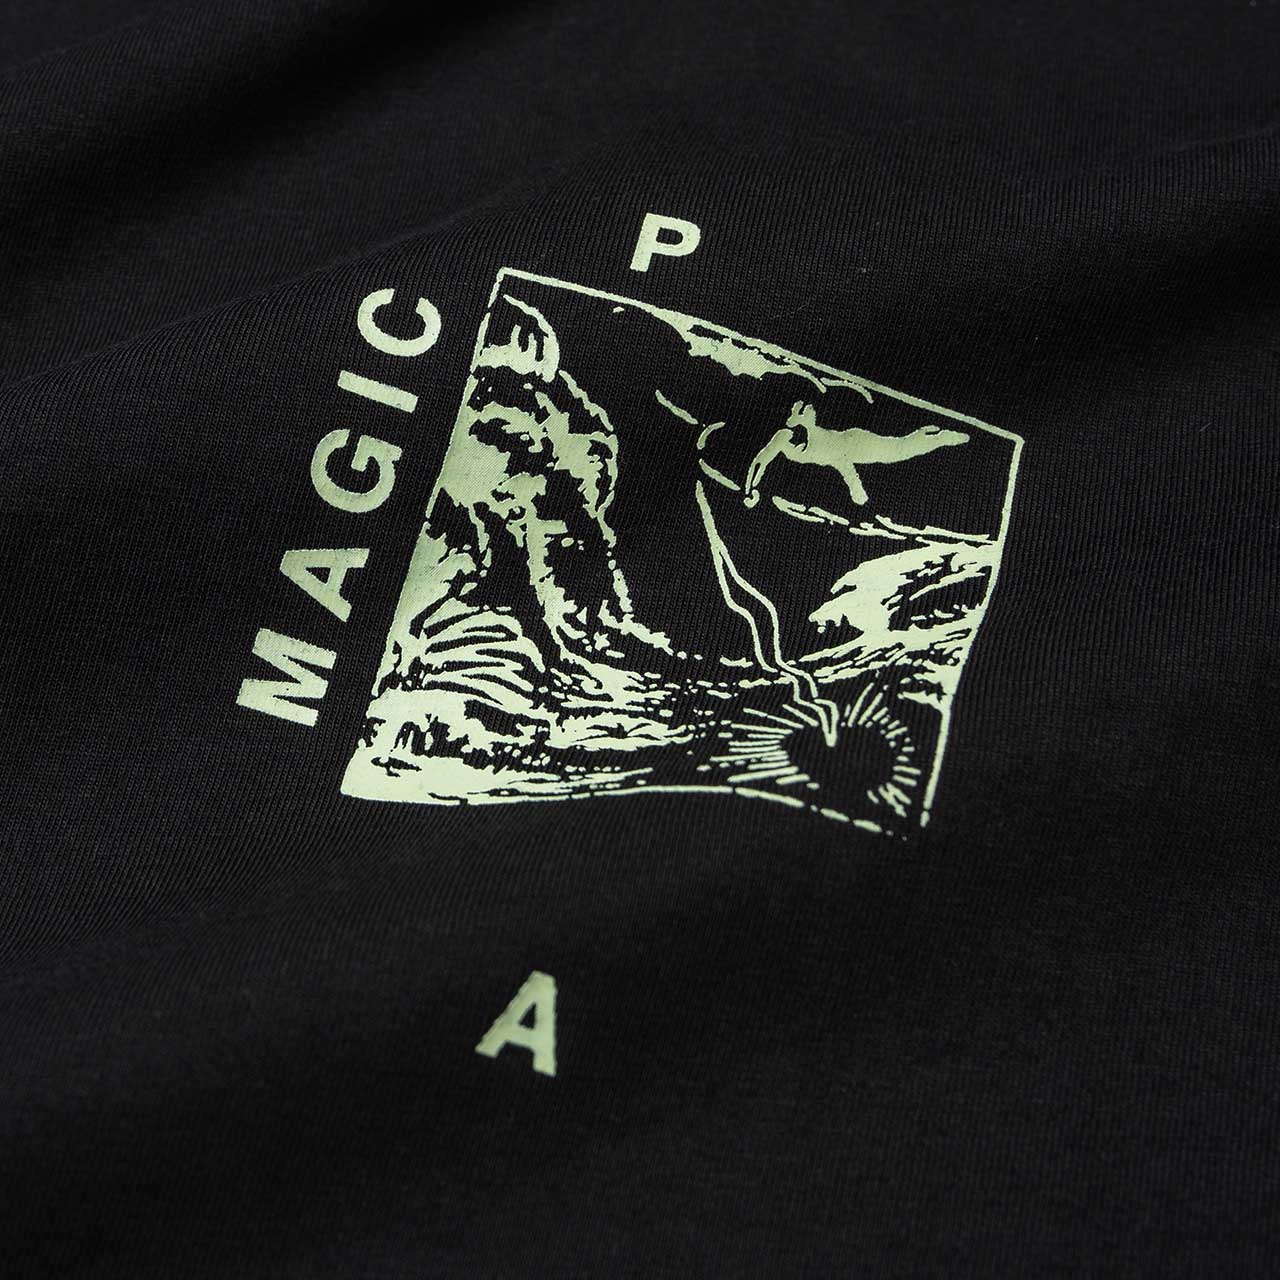 perks and mini version 1.2 s/s t-shirt (black) - 1390/c-b - a.plus - Image - 3